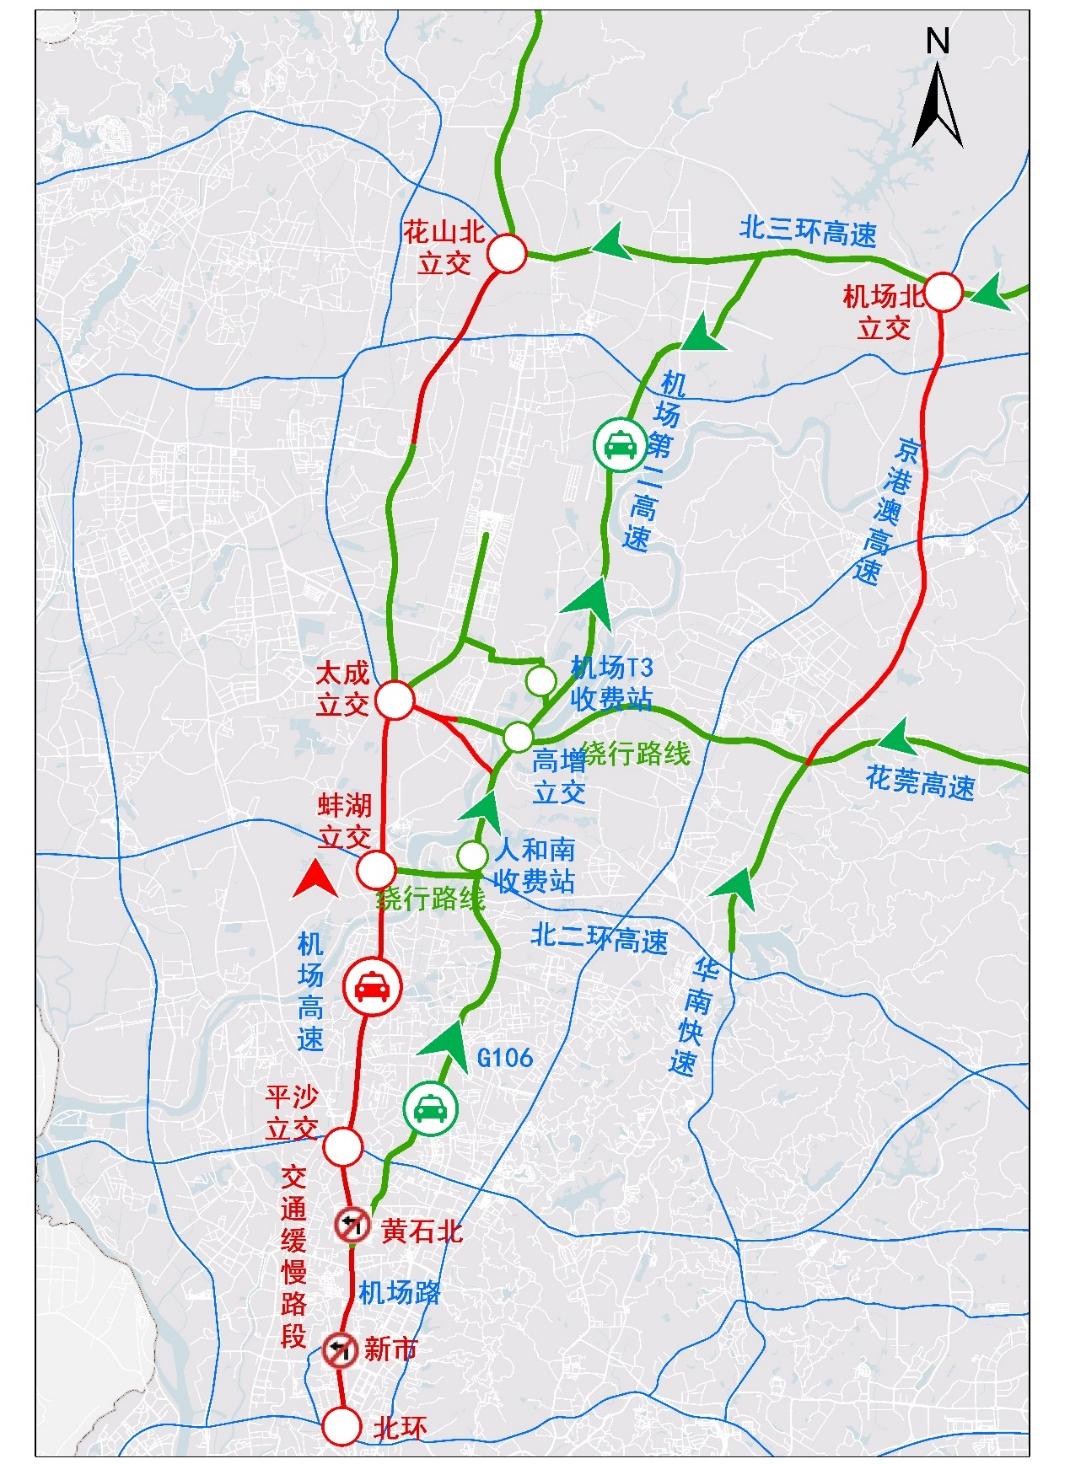 为避开机场高速缓慢路段,建议市民尽量选择地面道路前往,通过鹤龙路(g